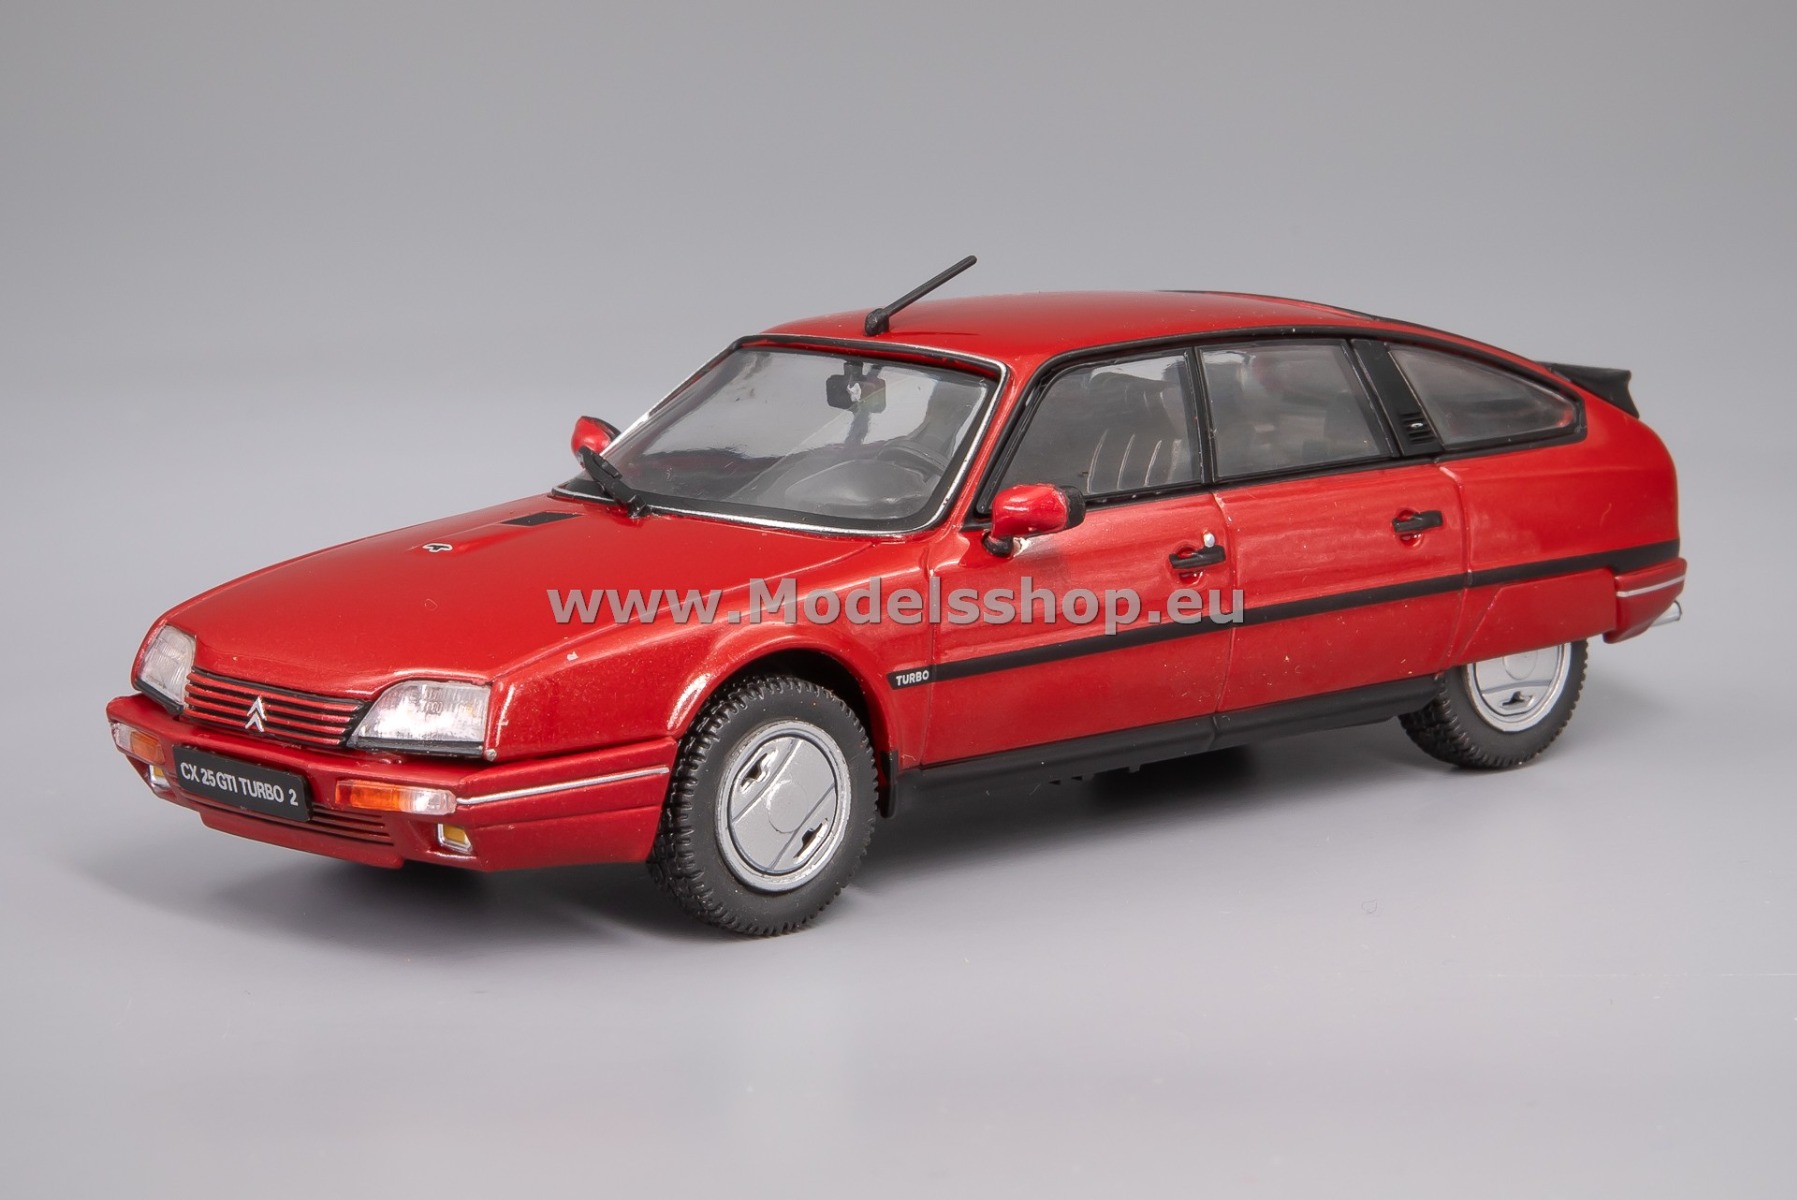 Solido S4311702  Citroen CX GTI Turbo II, 1988 /red/